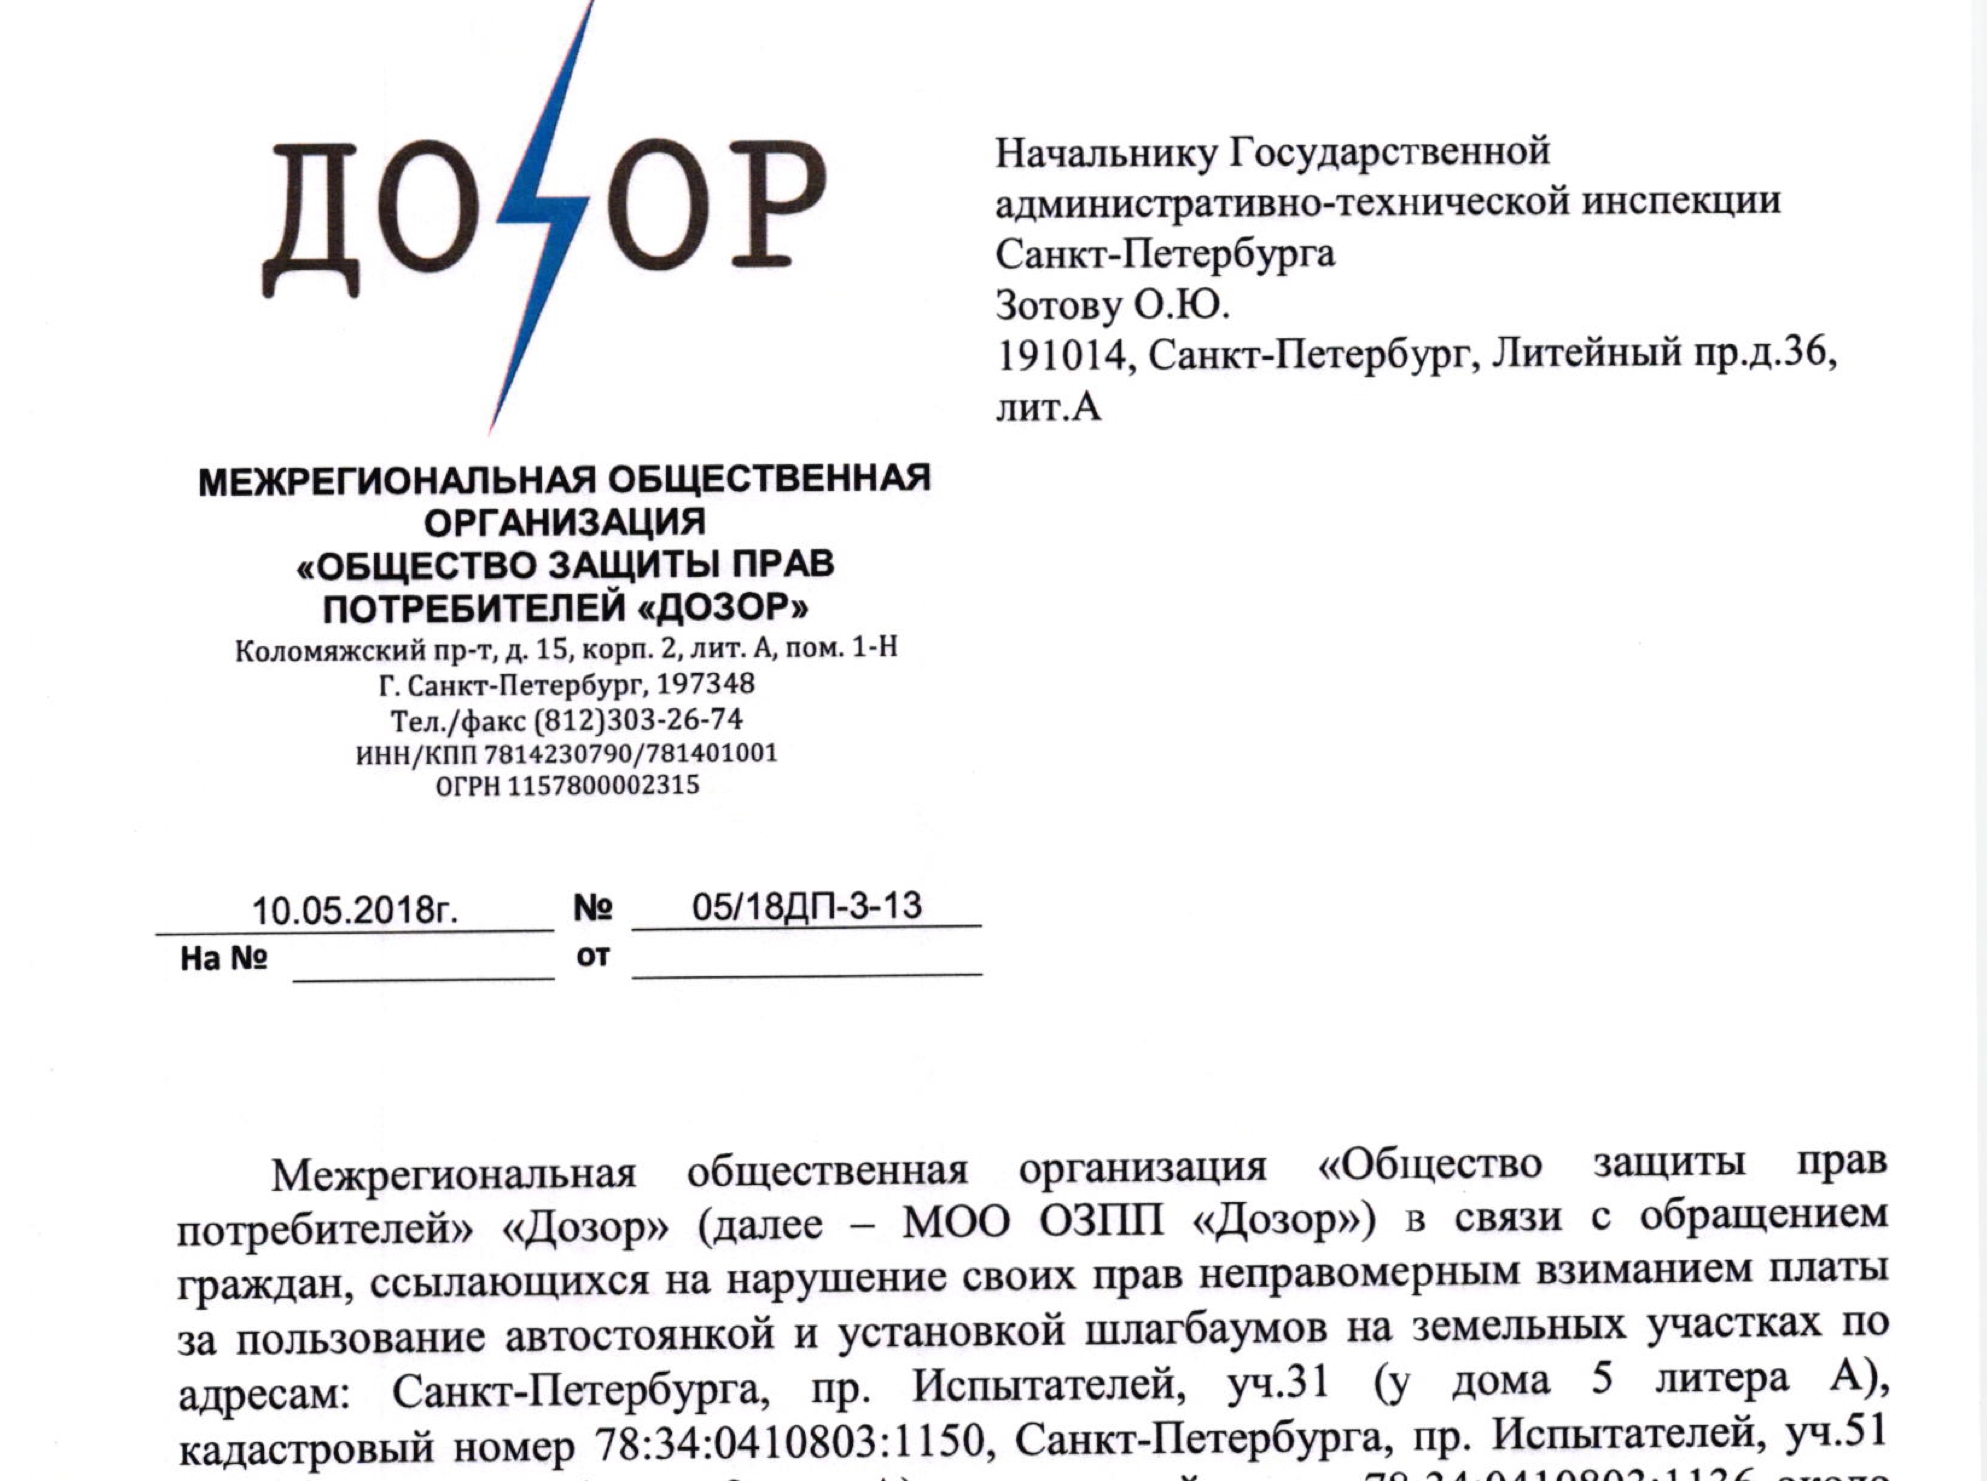 Заявление в ГКУ «Имущество Санкт-Петербурга» в связи с обращениями граждан ссылающихся на нарушение их прав неправомерным взыманием платы на парковке около ТЦ «Сити Молл»